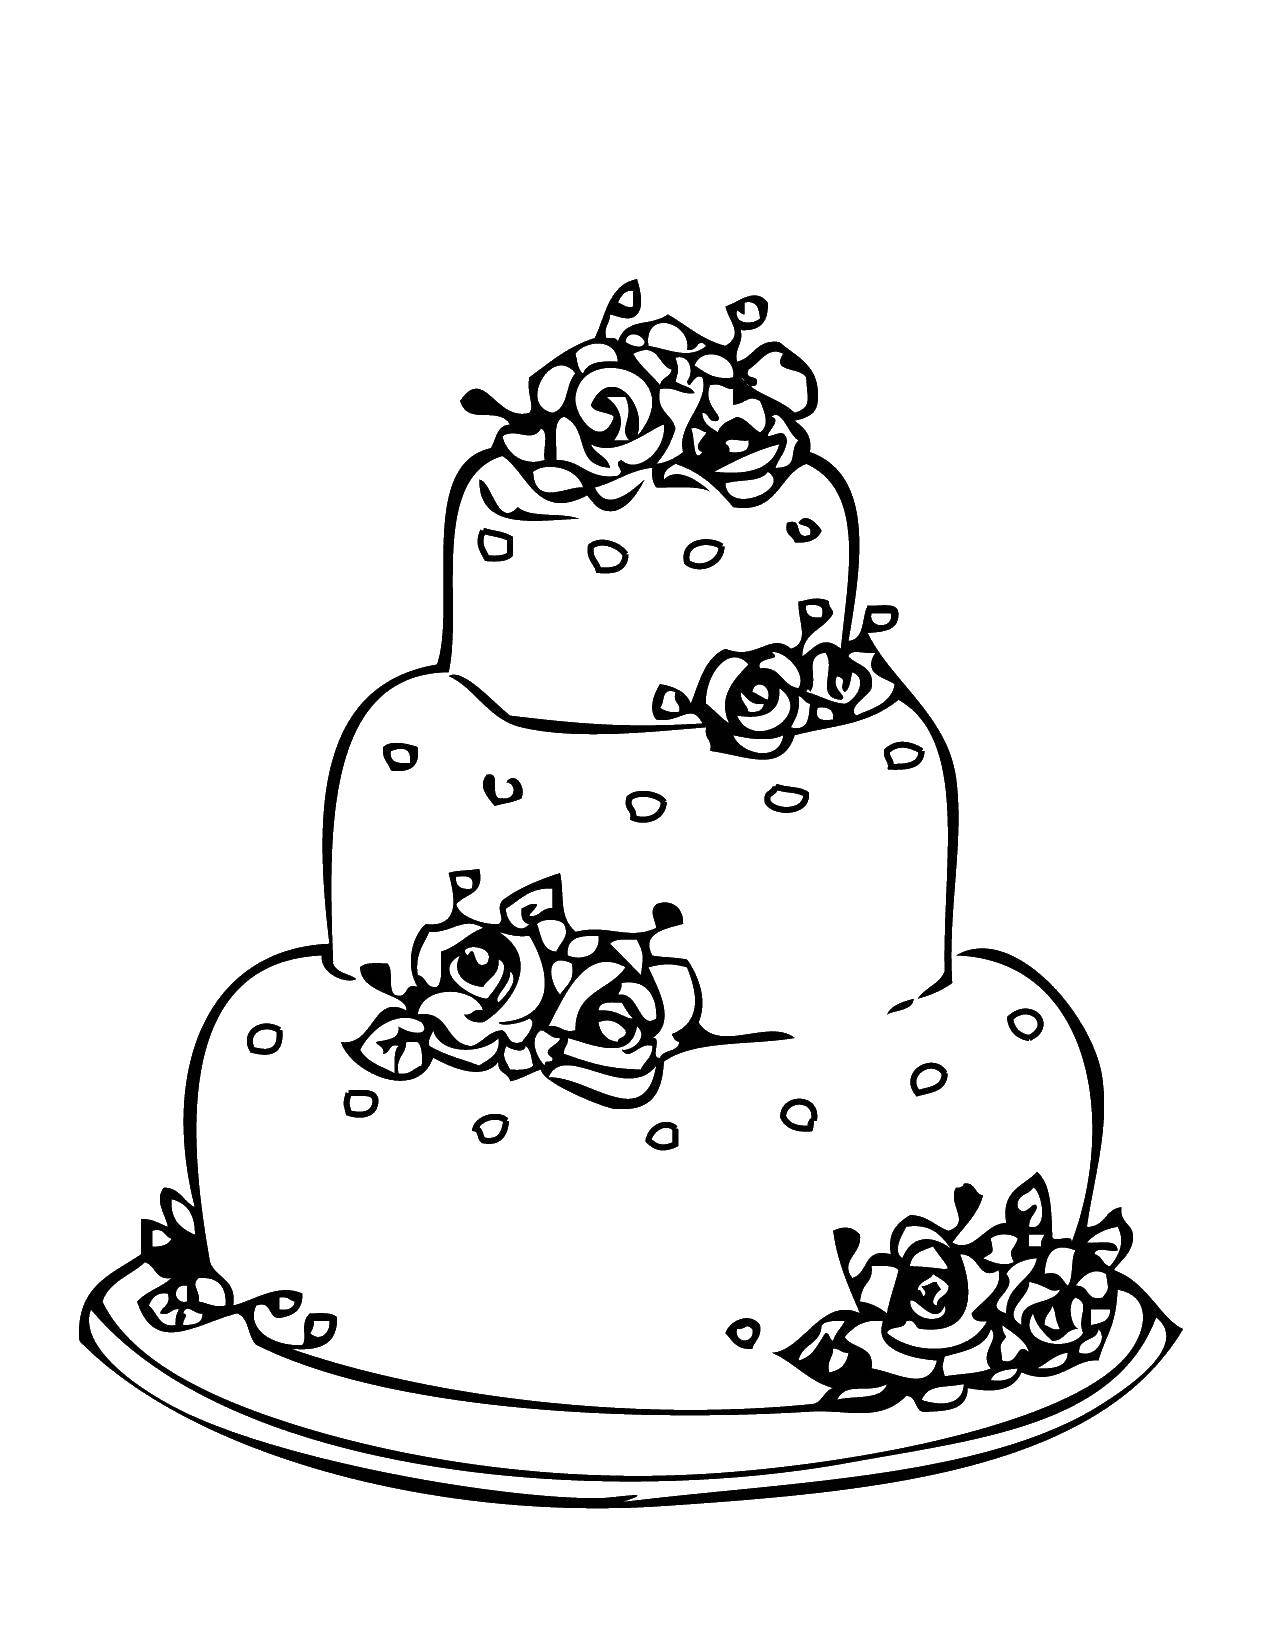 Coloring Wedding cake. Category Wedding. Tags:  wedding, cake, cake, flowers.